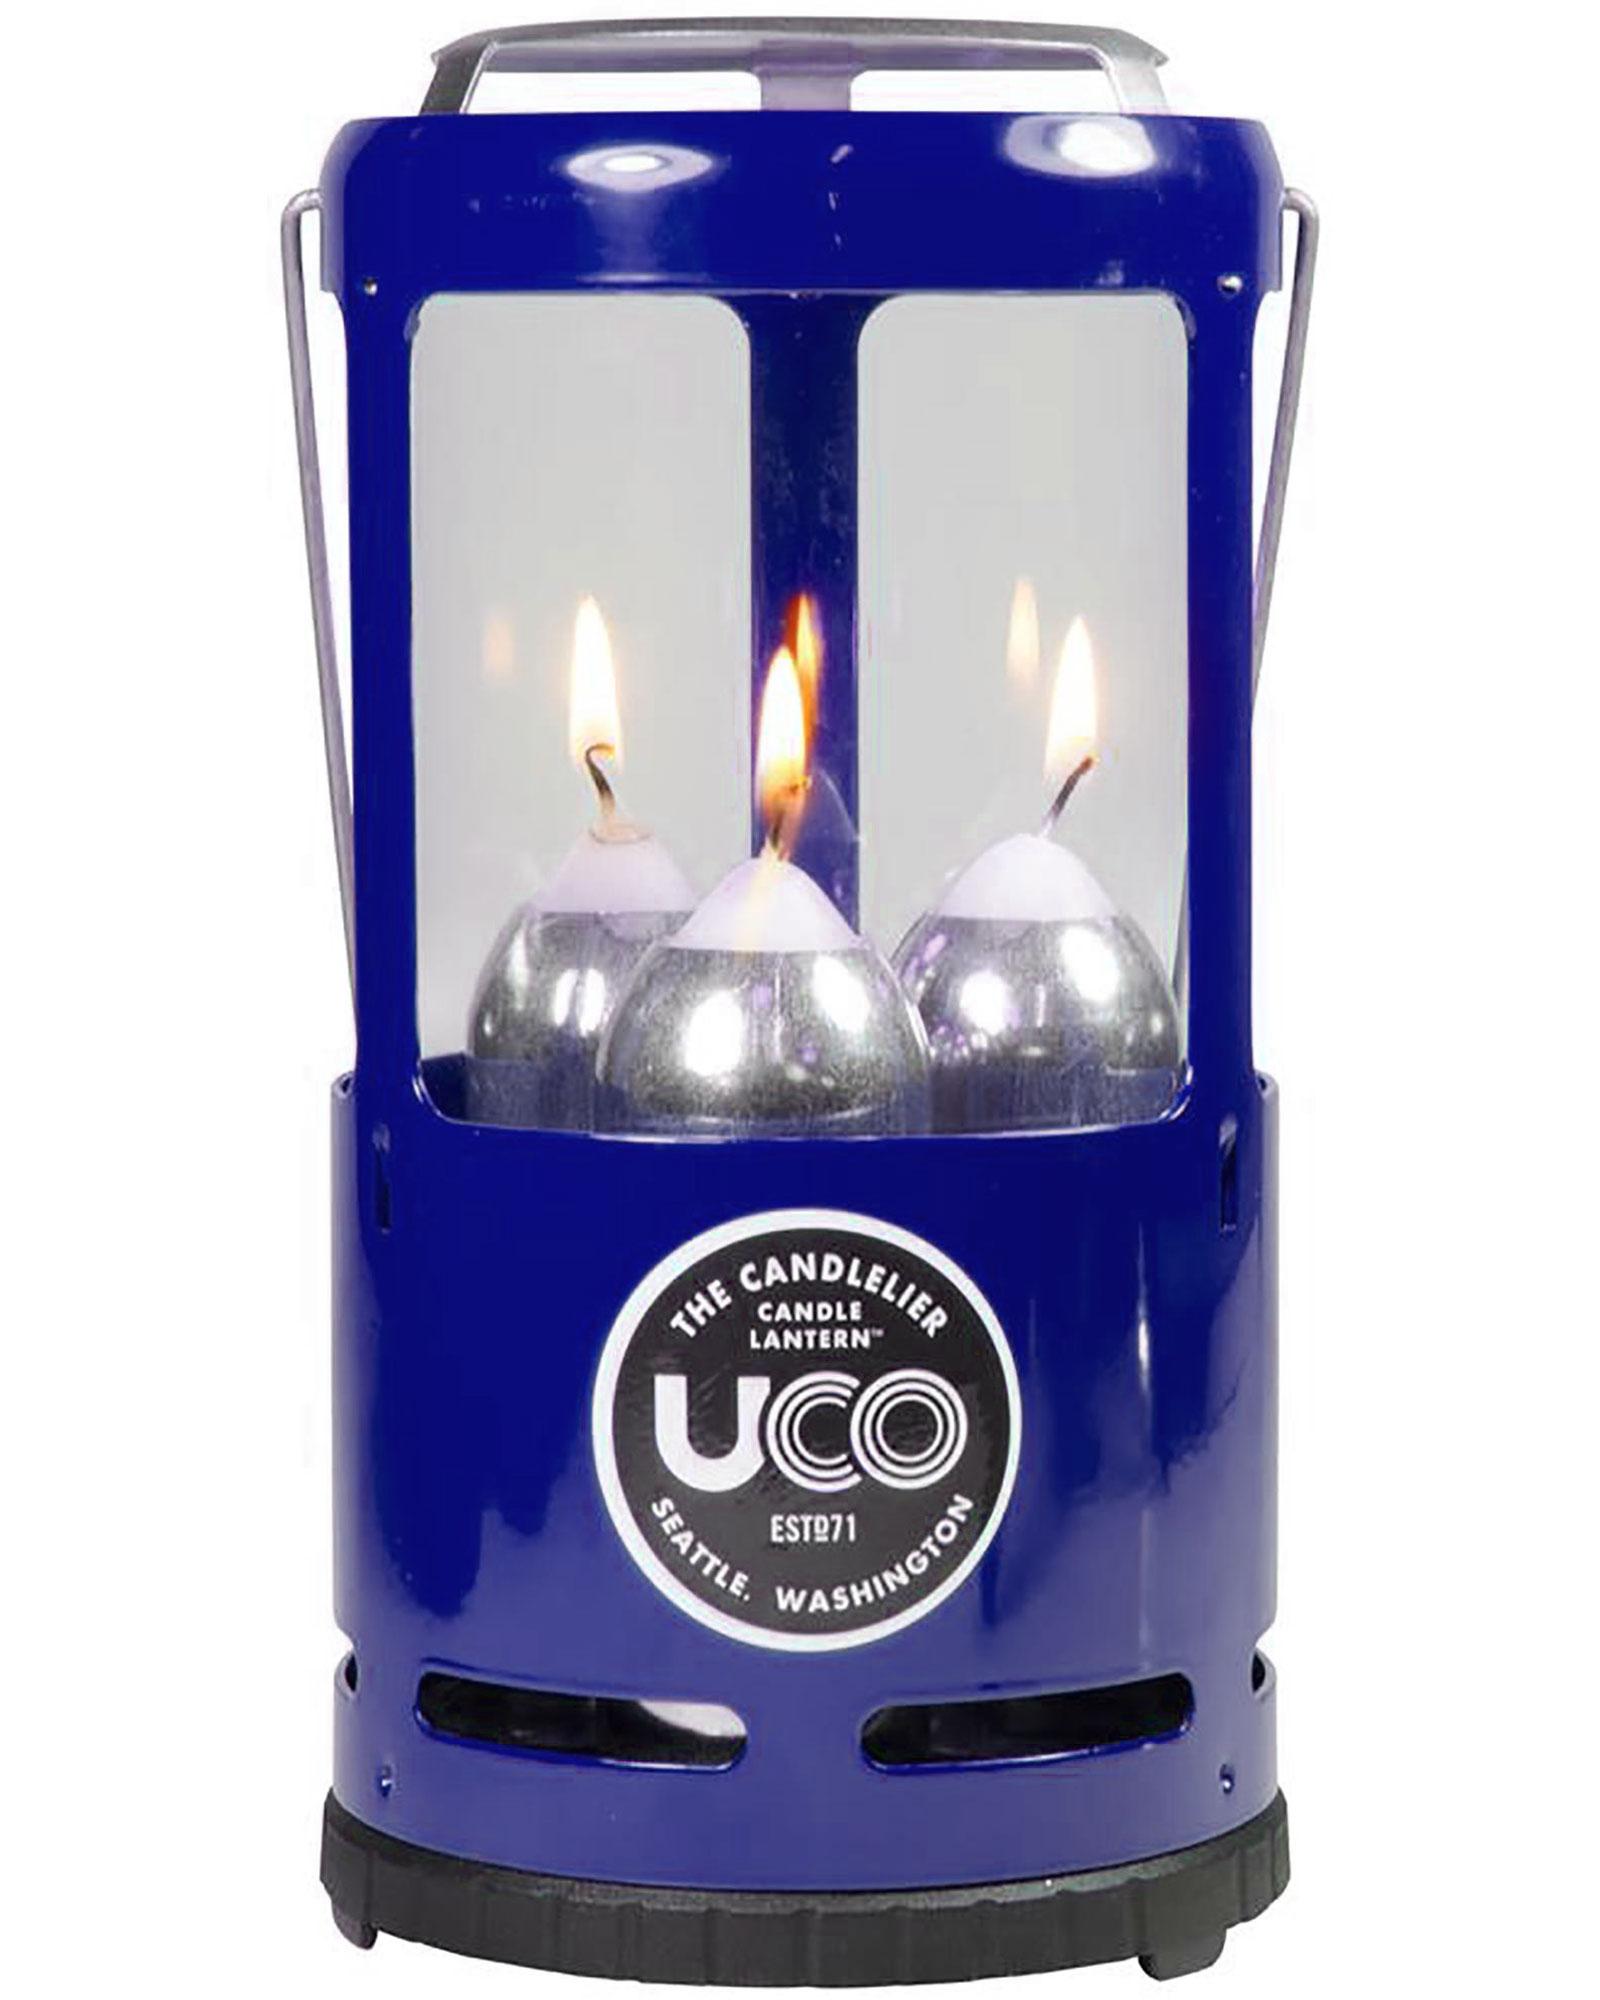 Uco Candlelier Candle Lantern